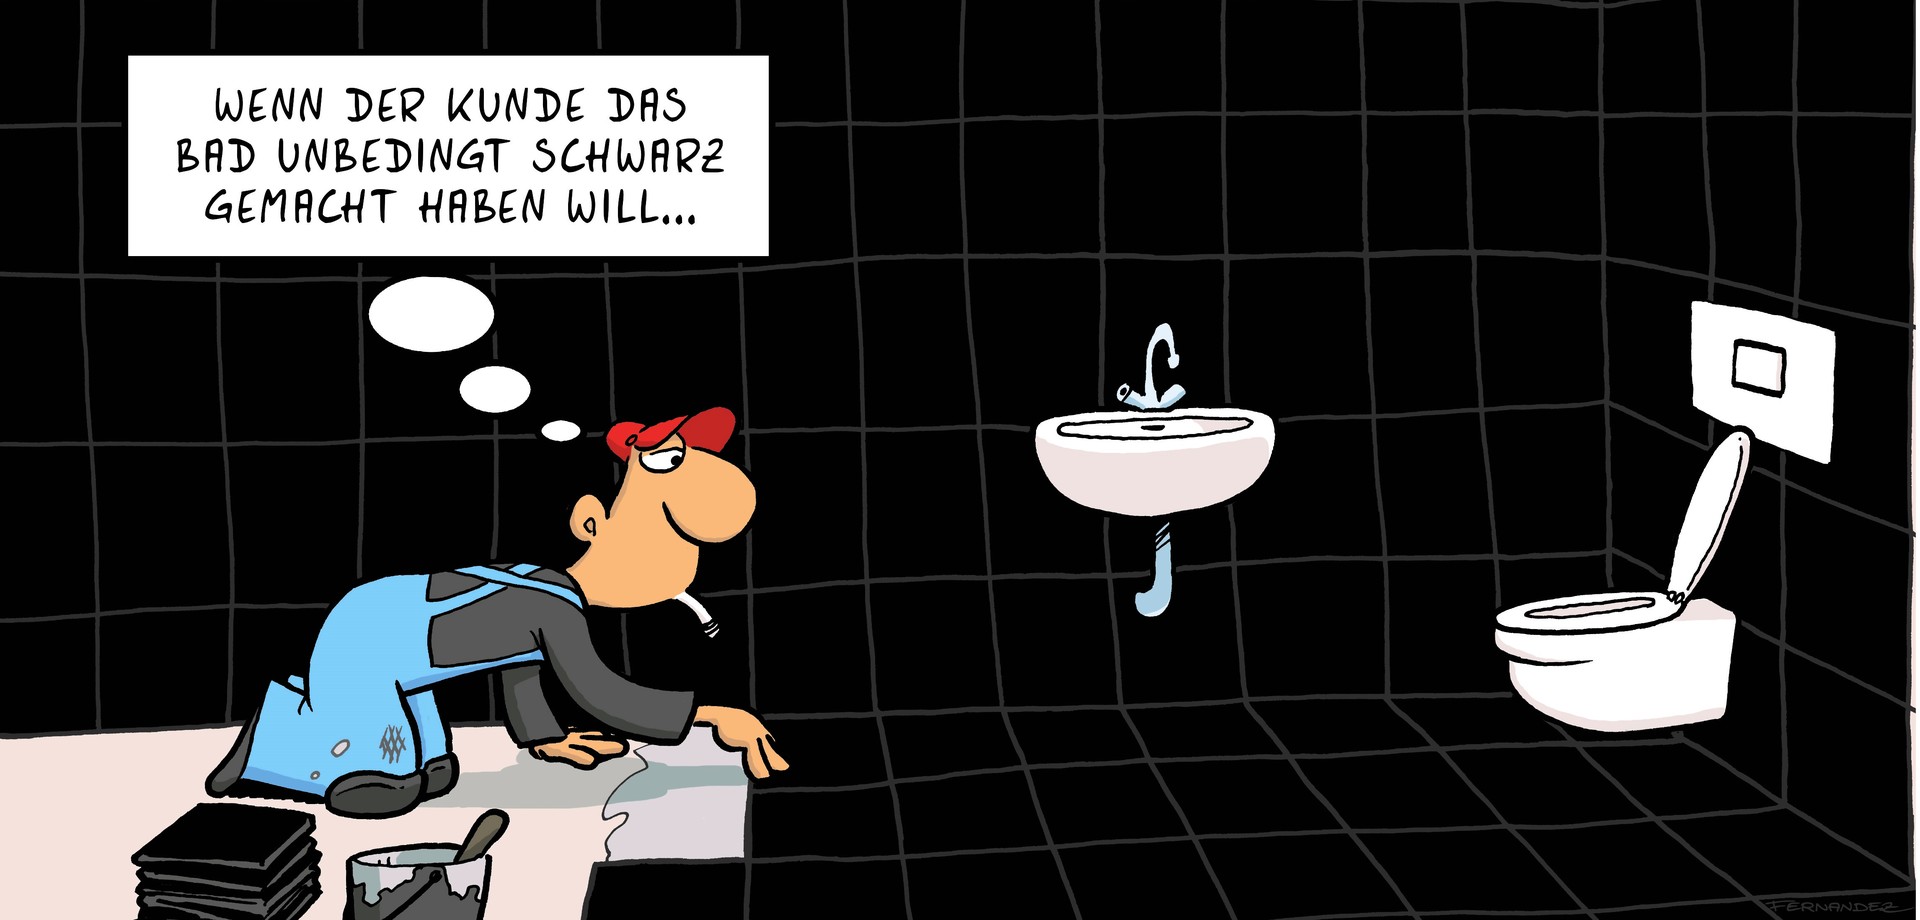 Cartoon: Wenn der Kunde das Bad unbedingt schwarz gemacht haben will...Das Bad wird schwarz gefliest